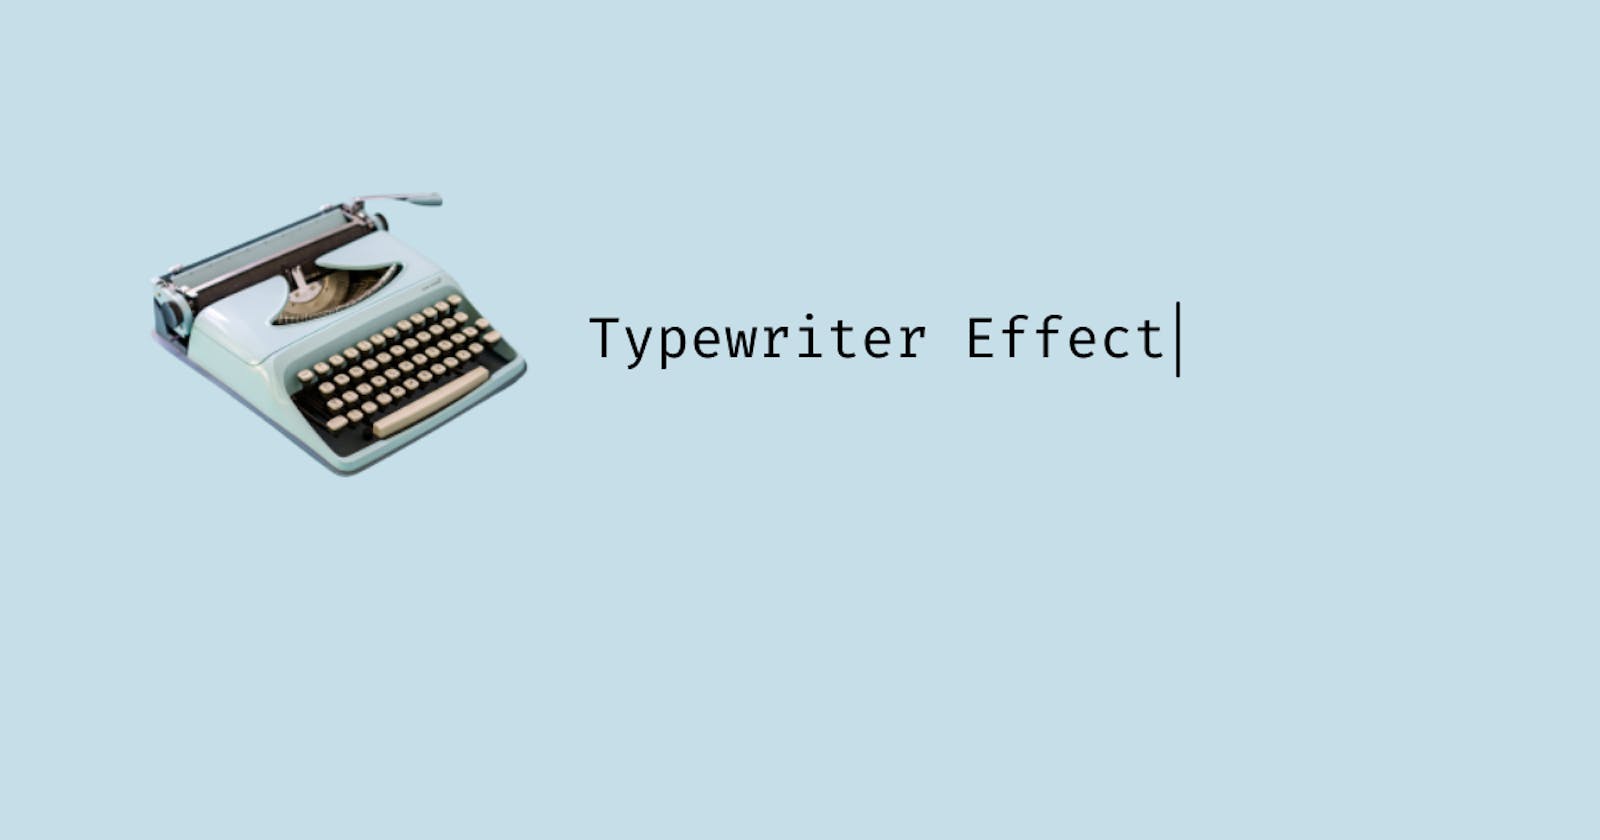 Typewriter effect using CSS